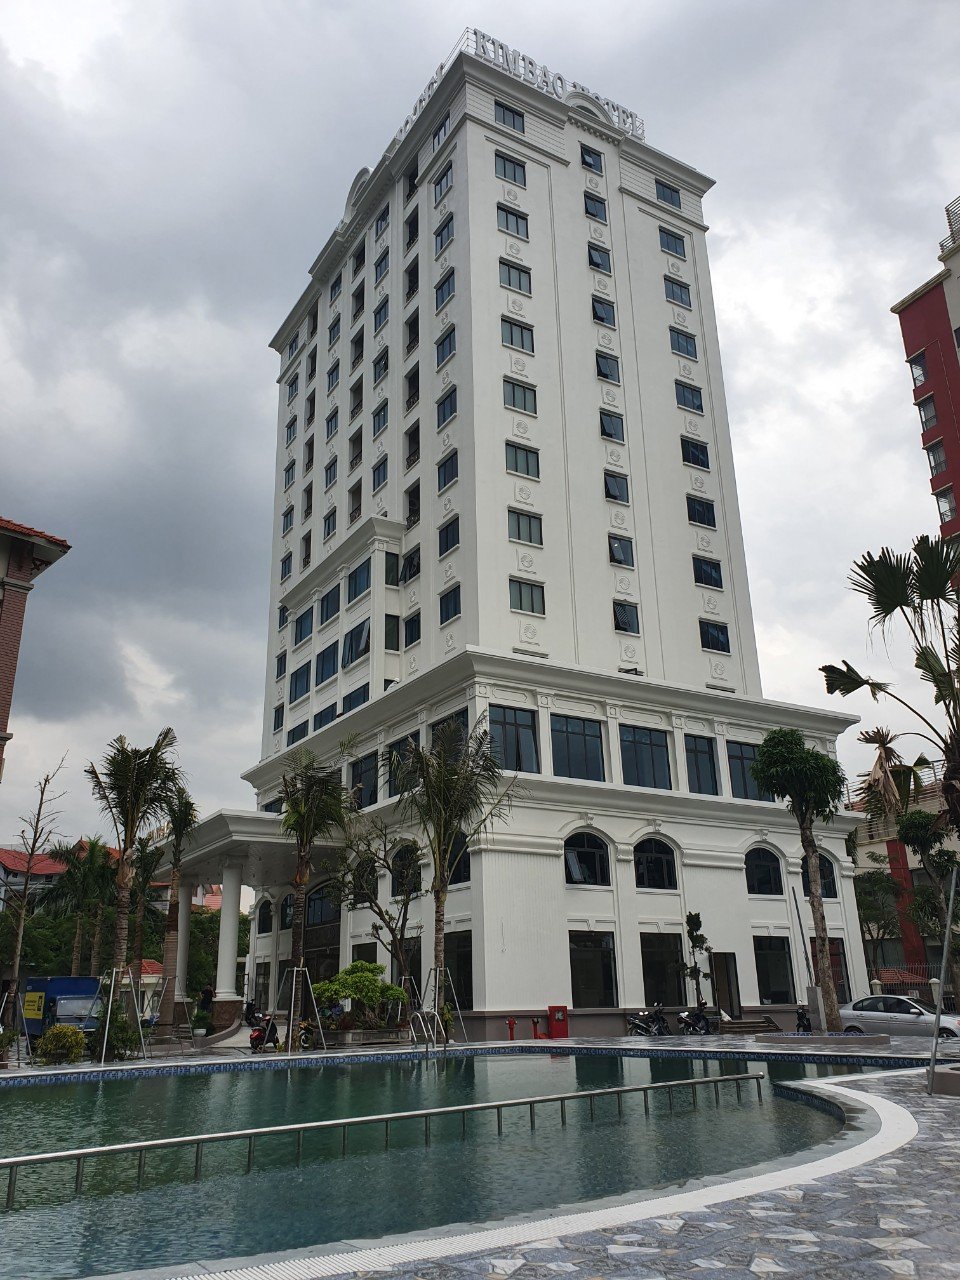 Khách sạn Kim Bảo